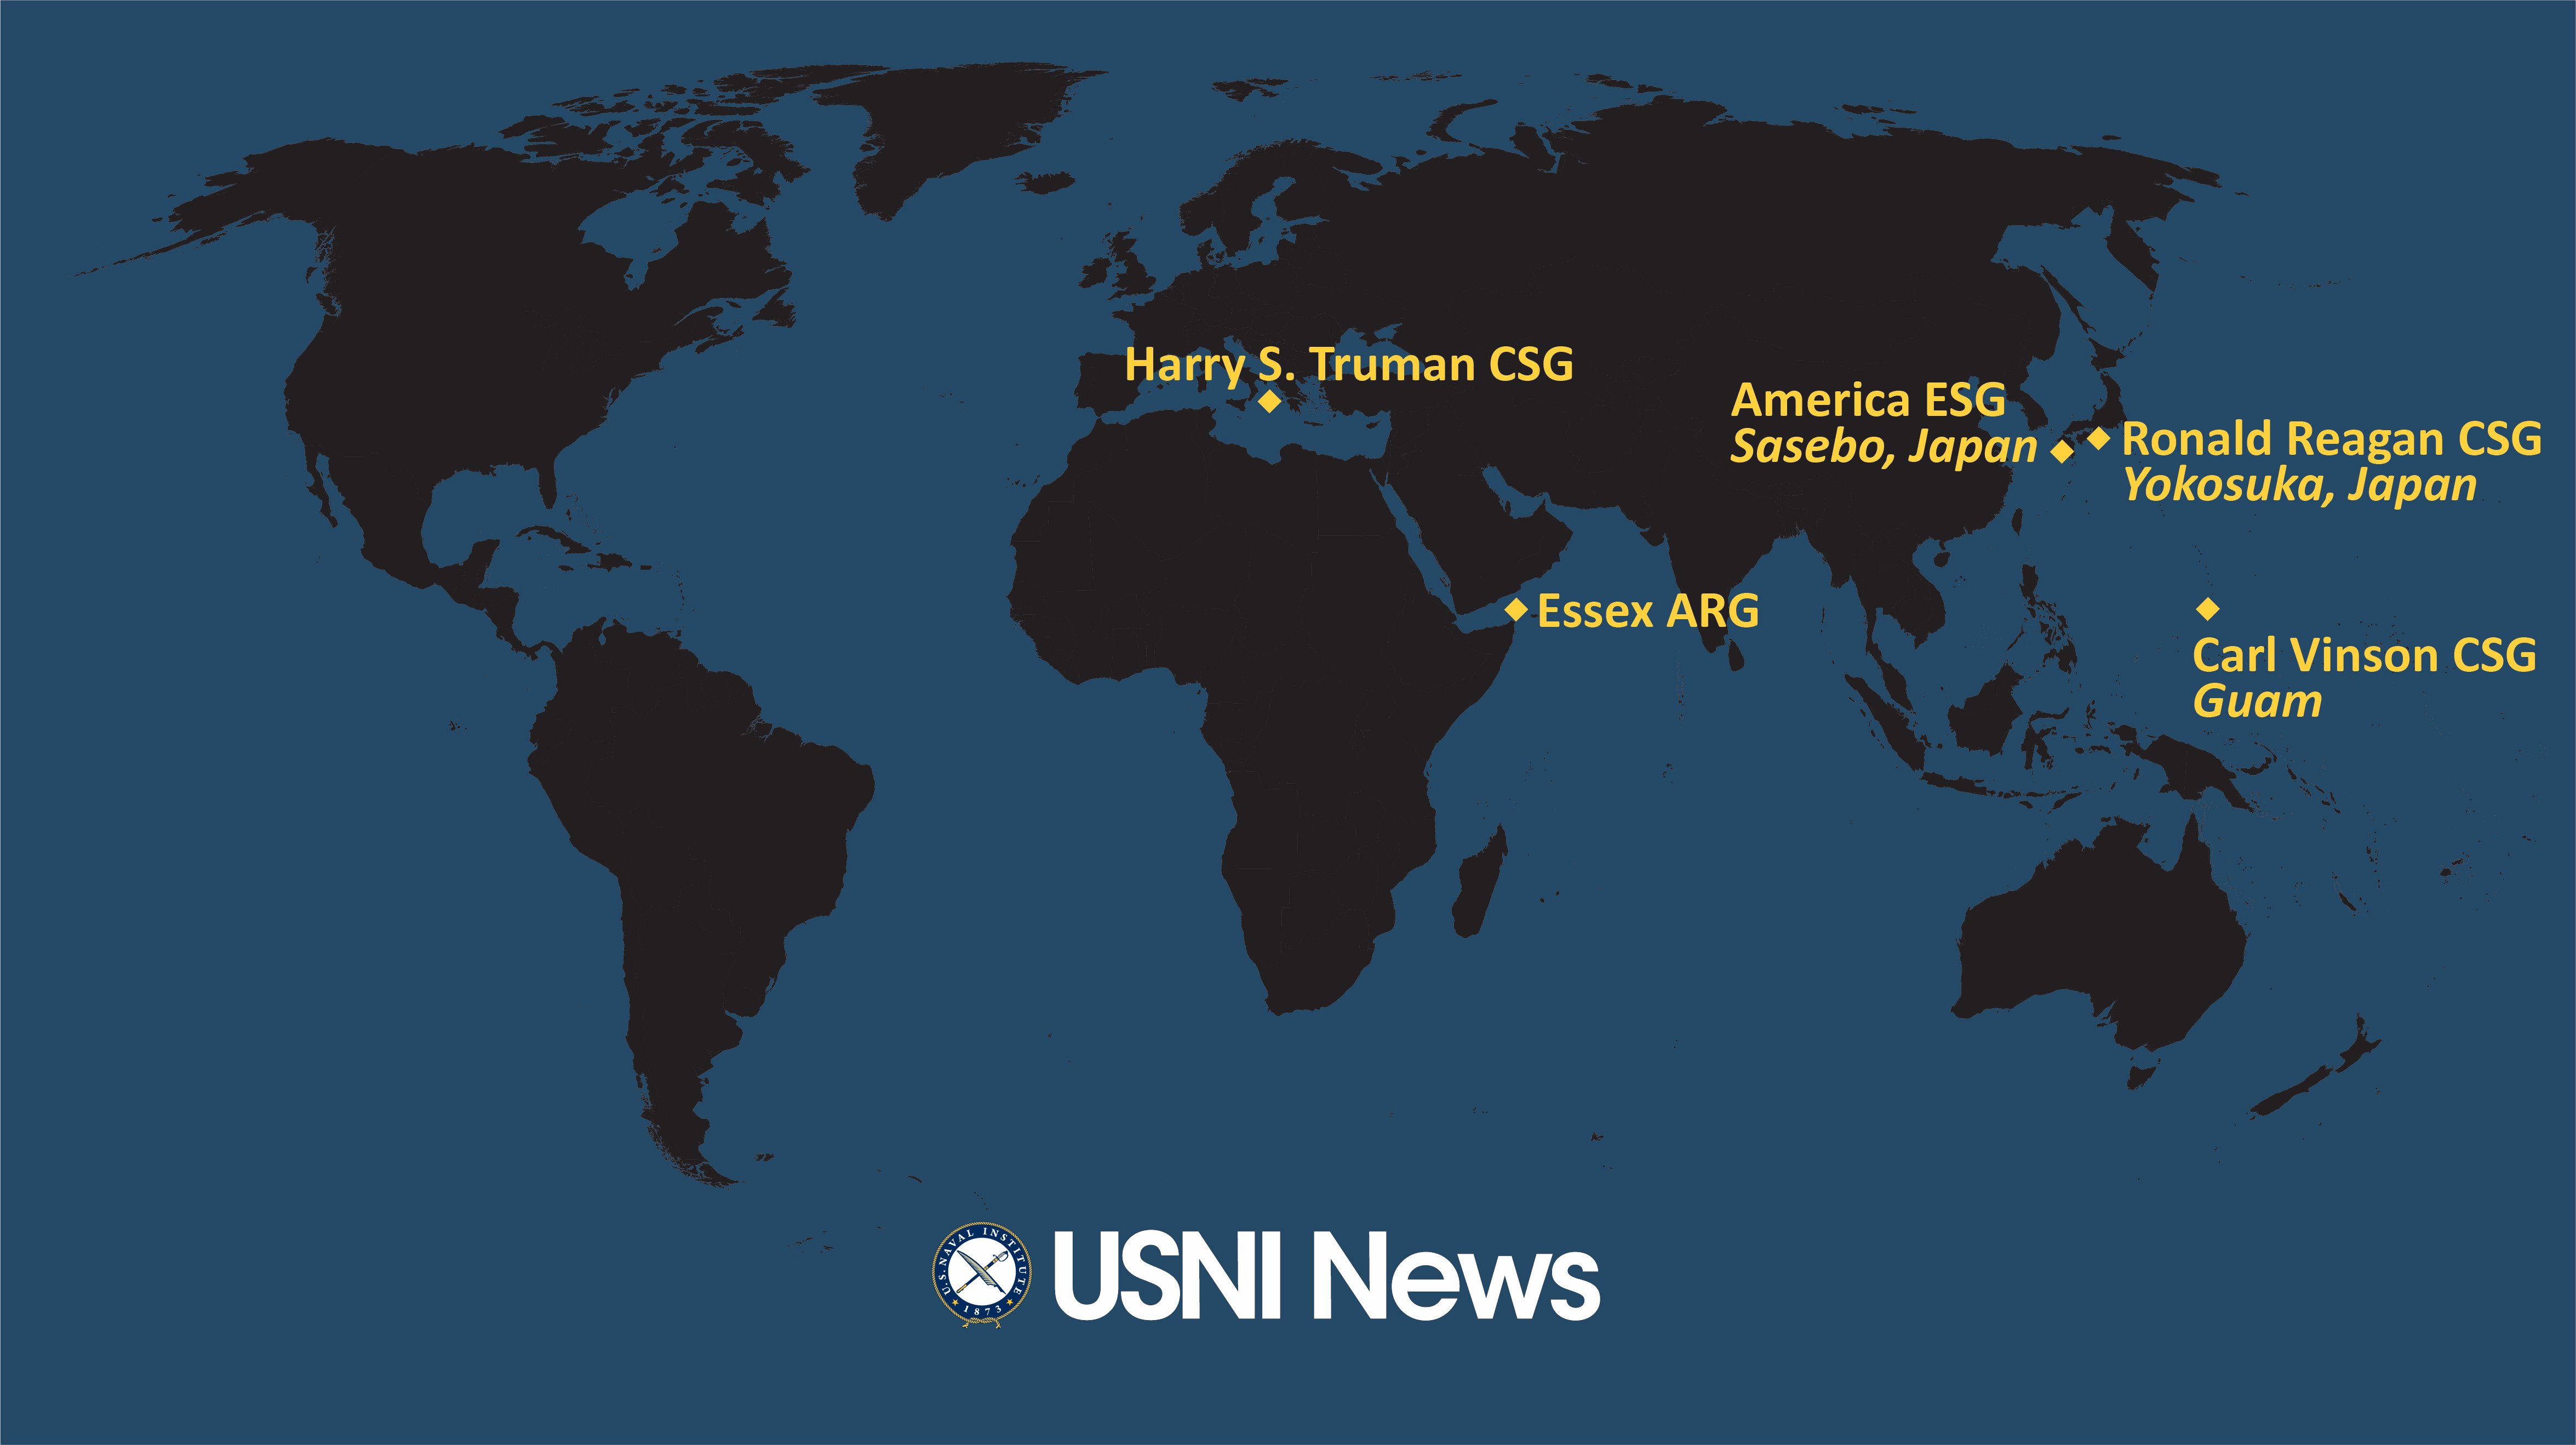 США оставят в Средиземном море авианосец и корабли из-за войск РФ на границе Украины – АР